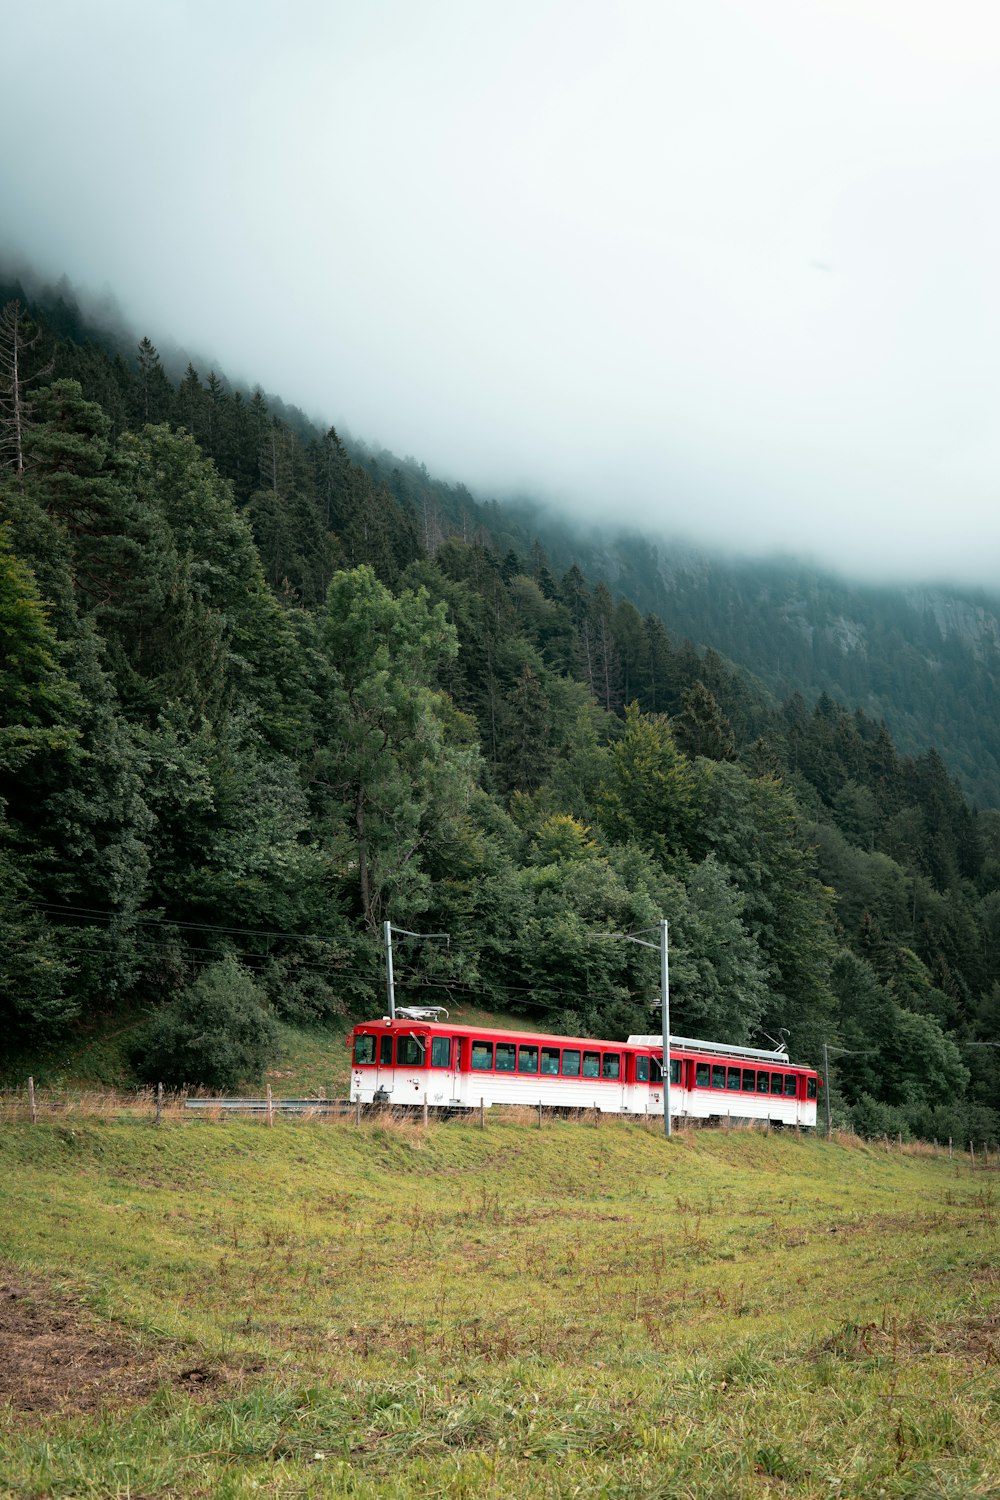 rot-weißer Zug auf der Bahnstrecke in der Nähe von grünen Bäumen und Bergen tagsüber